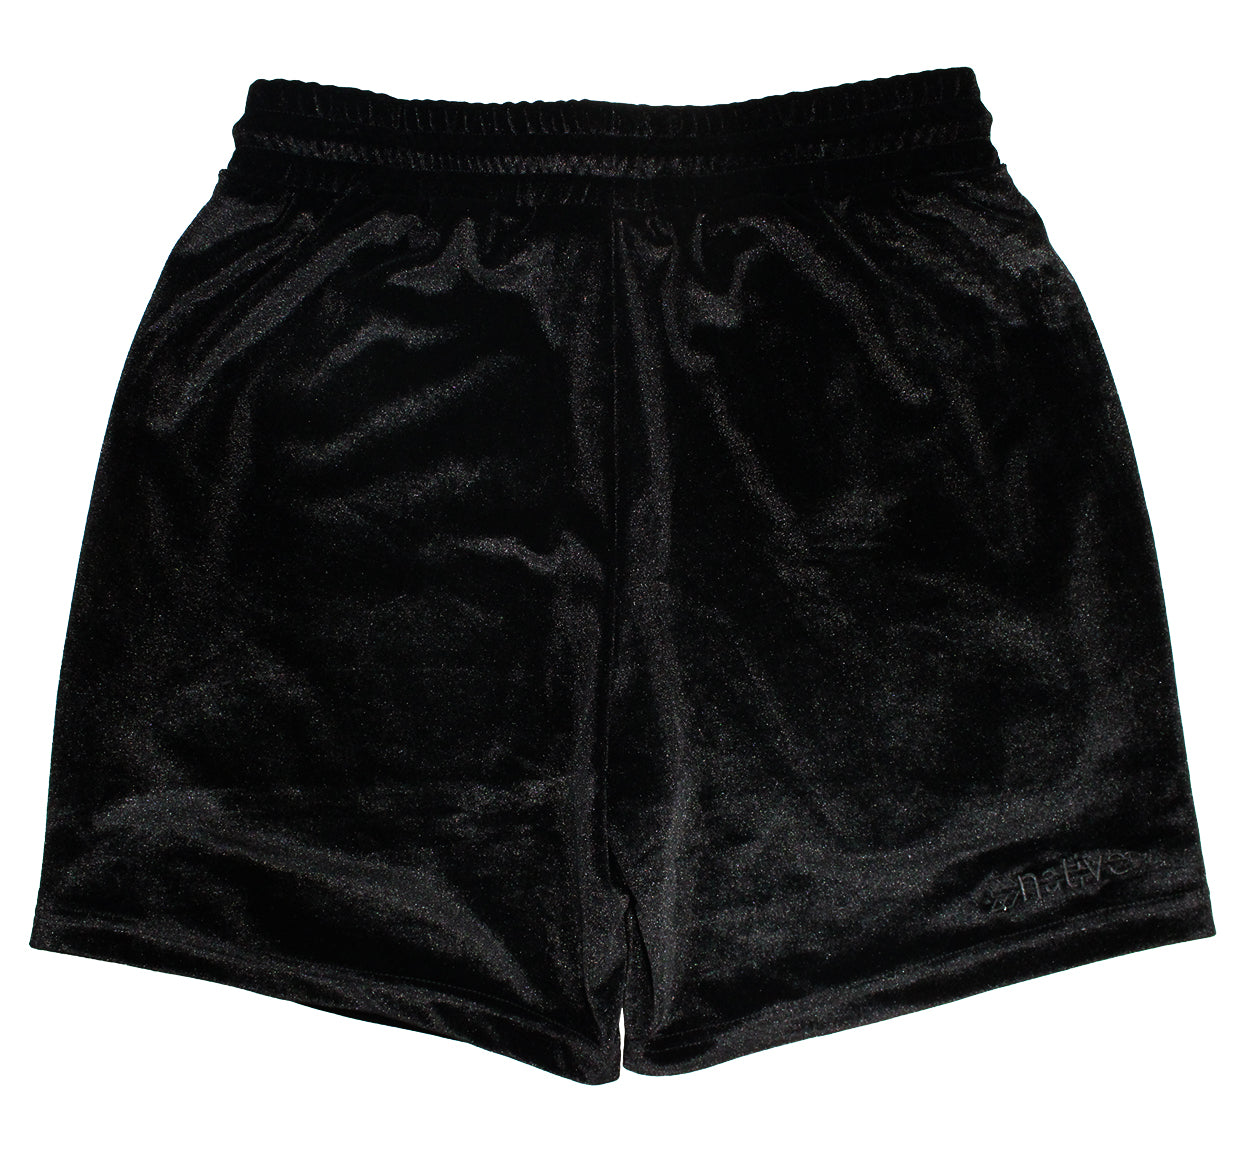 velvet shorts in blackout